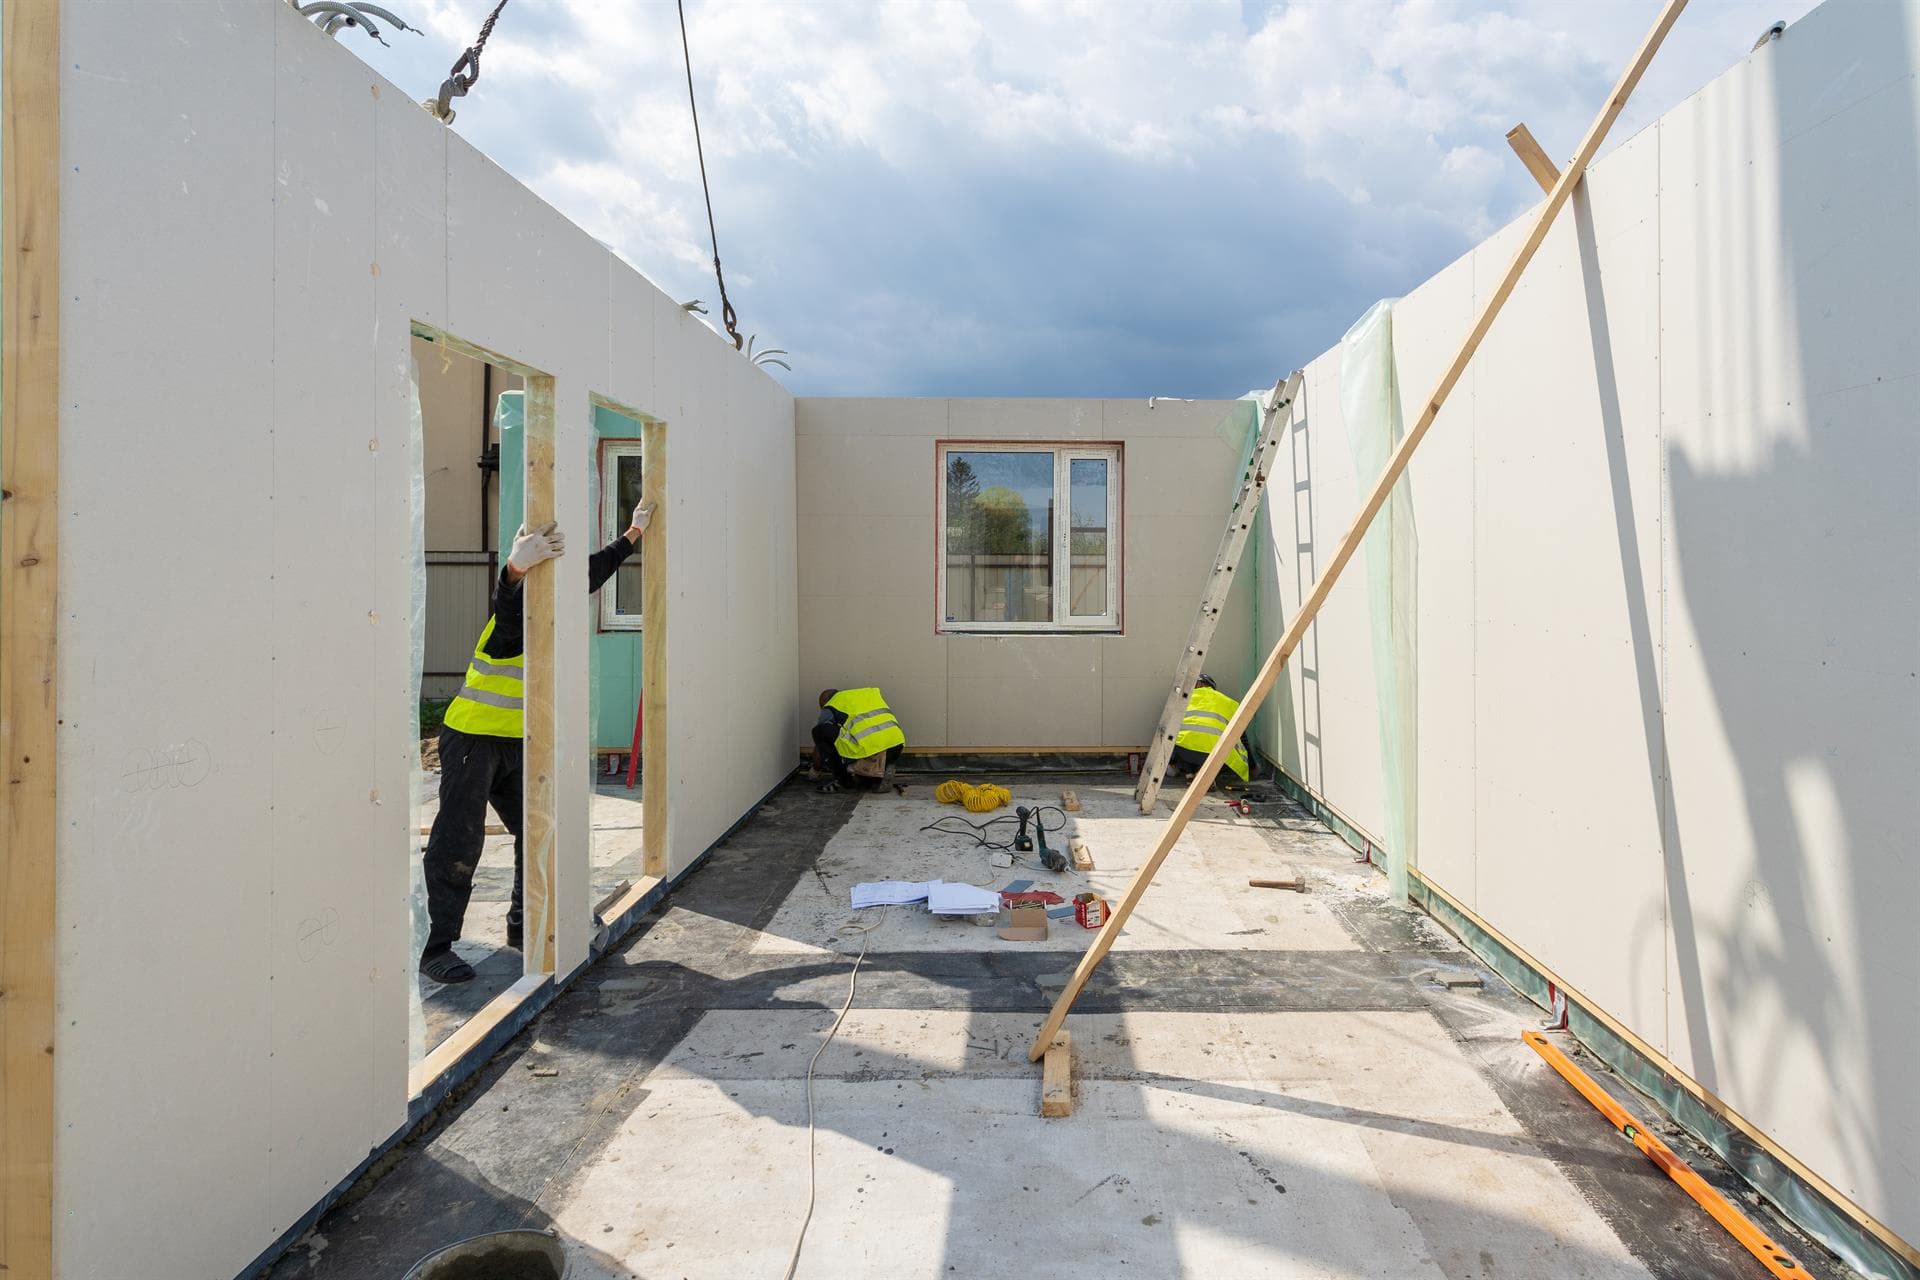 Realizamos casas modulares bioclimáticas con estándares Passivhaus